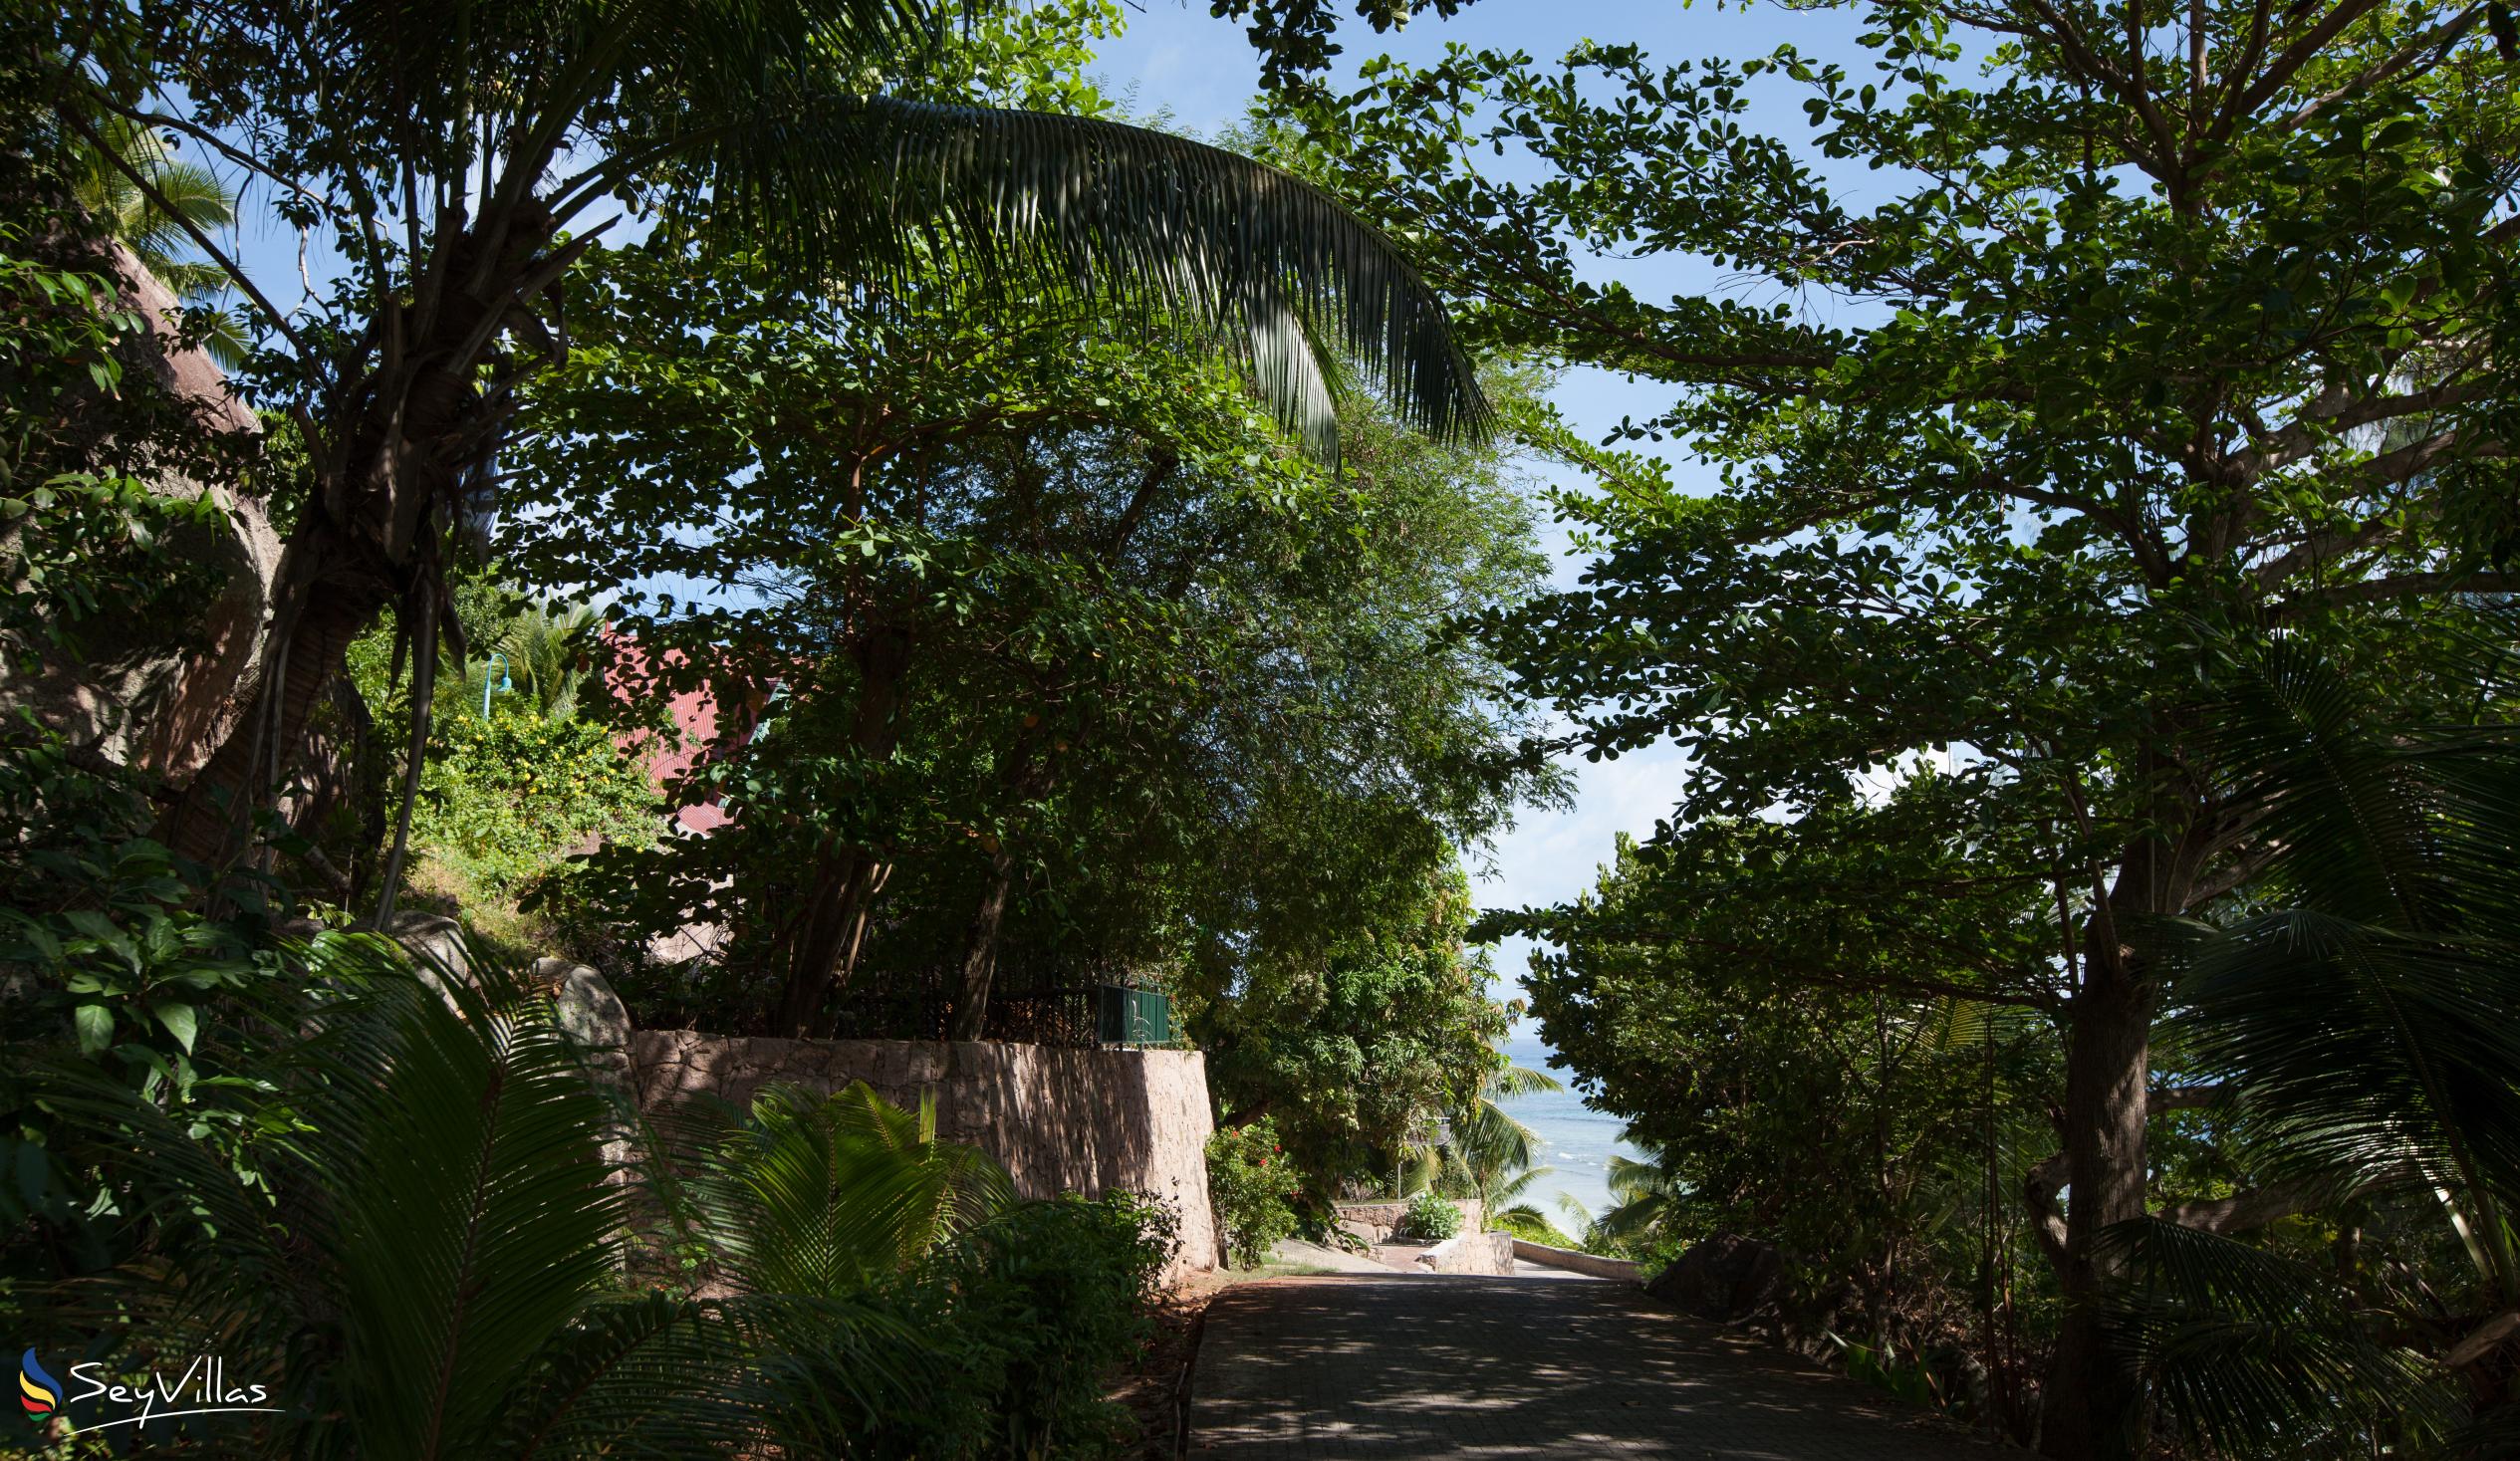 Photo 52: Villa Verte - Outdoor area - La Digue (Seychelles)